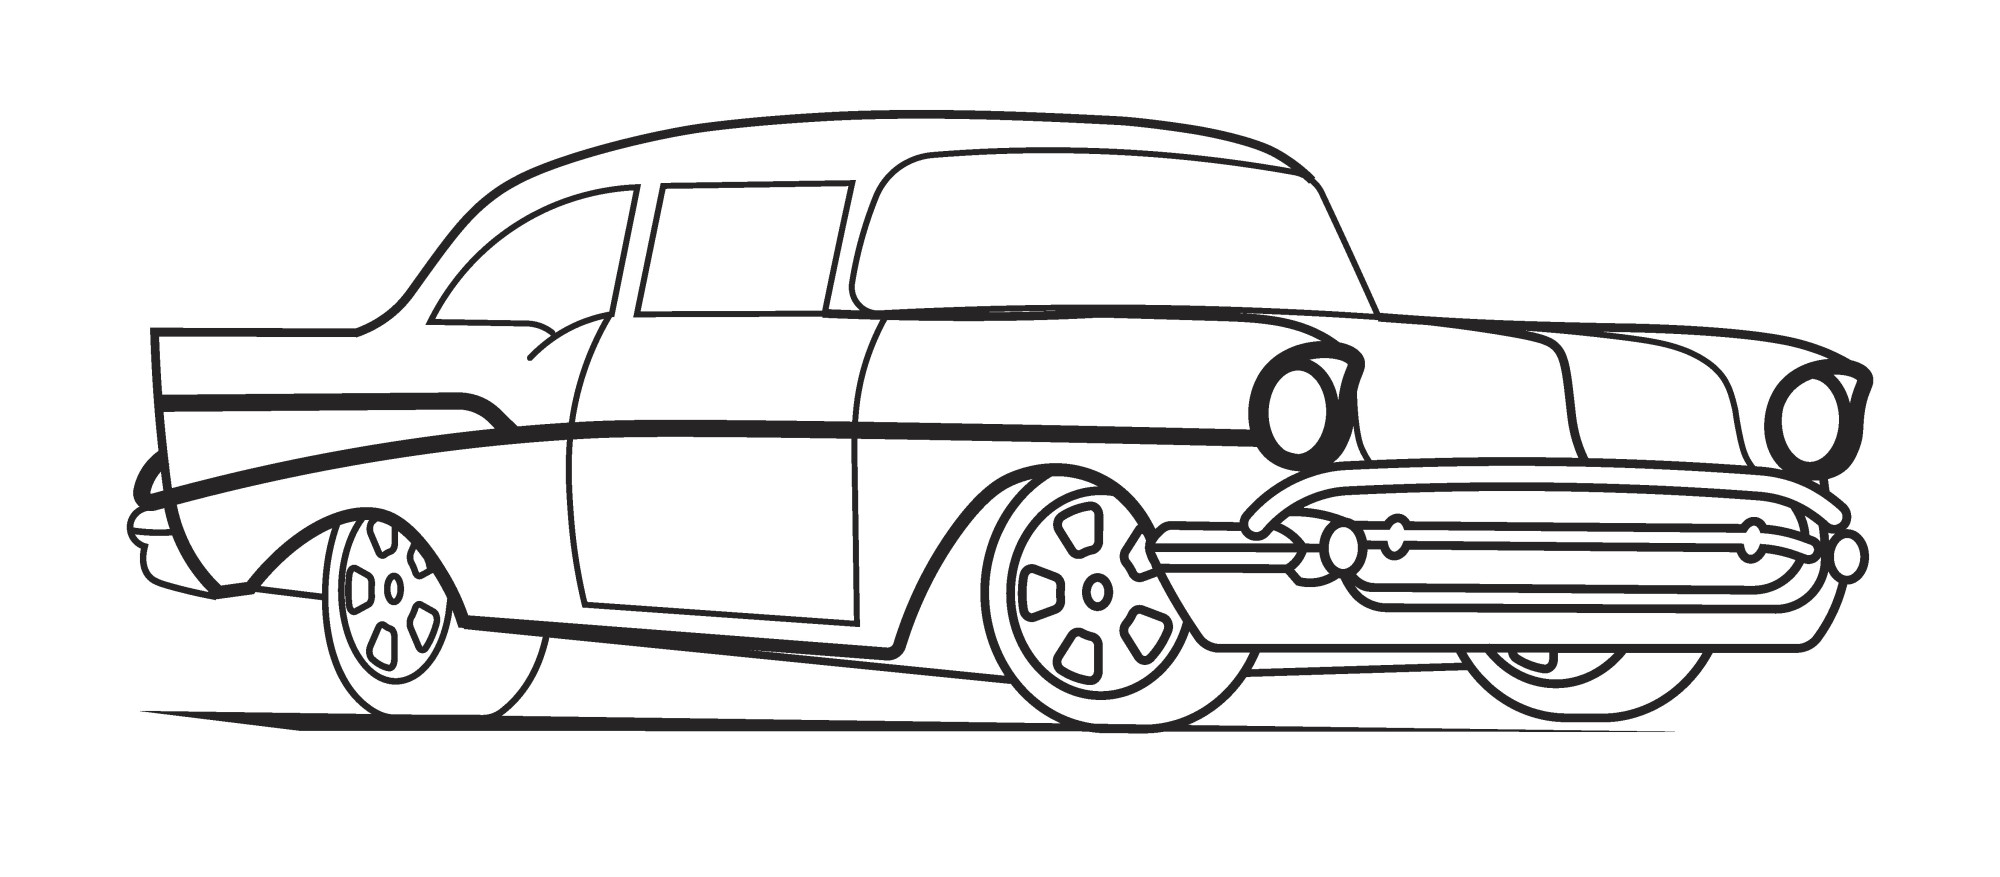 Раскраска для детей: гоночная машина «Гонщиков грация»